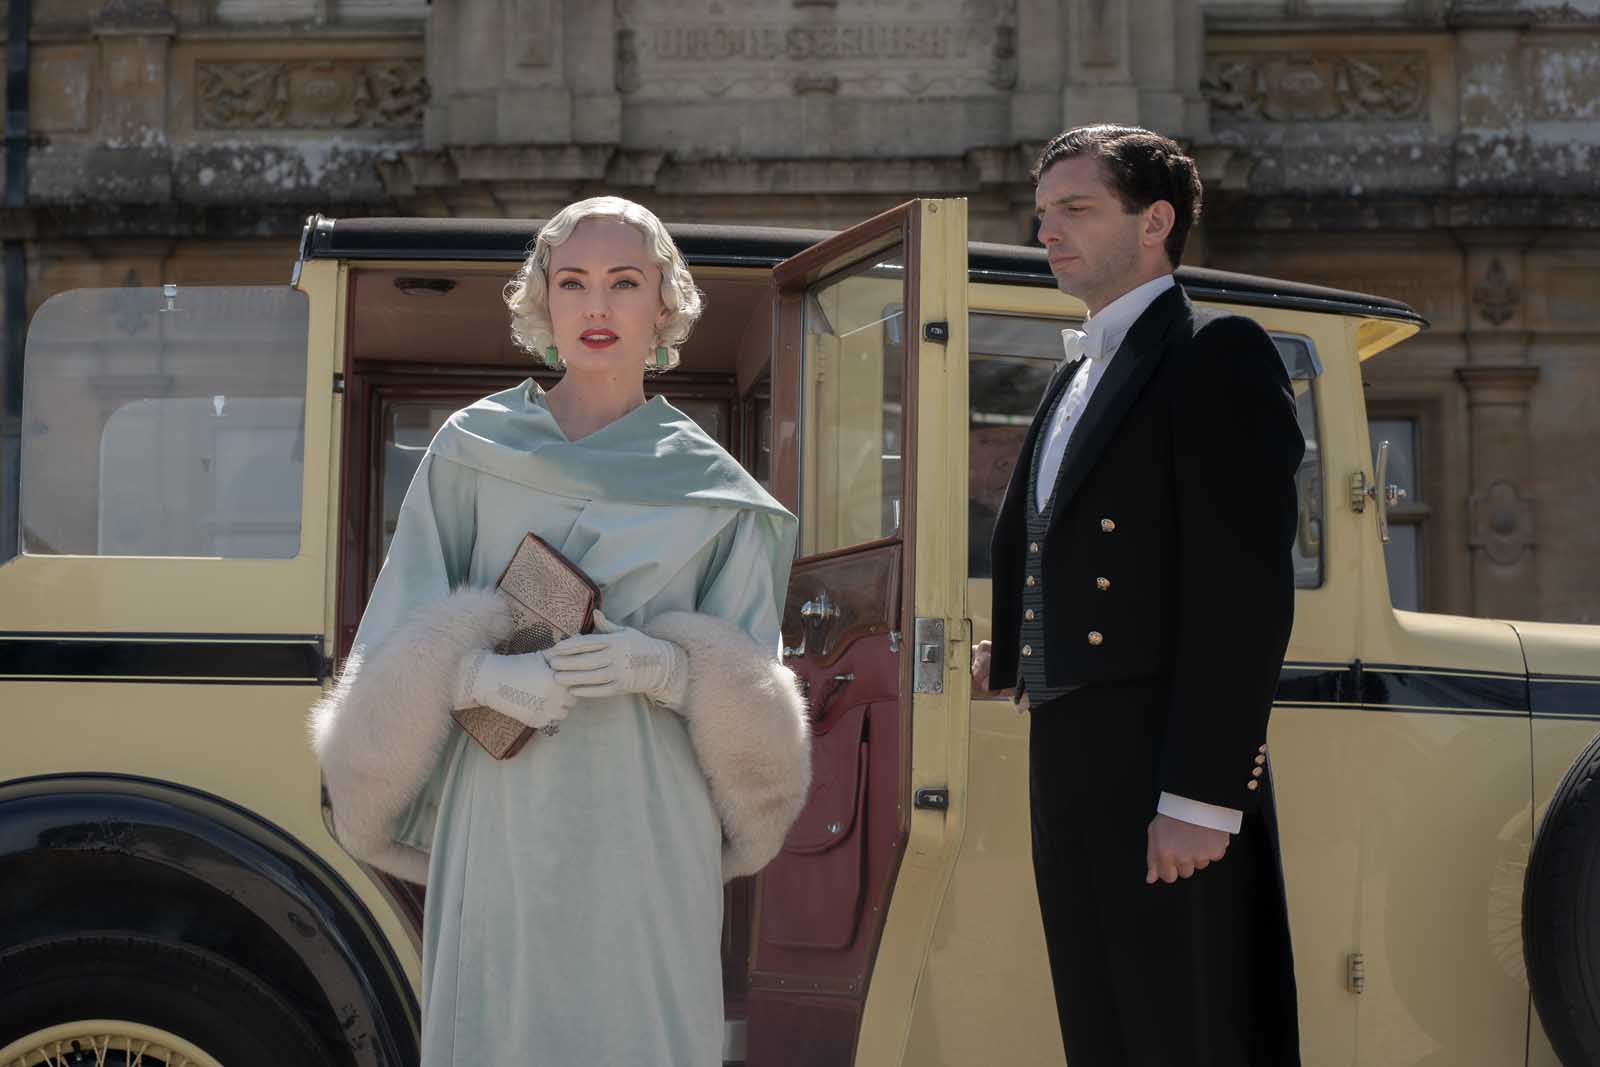 Szenenbild 8 vom Film Downton Abbey 2: Eine neue Ära 